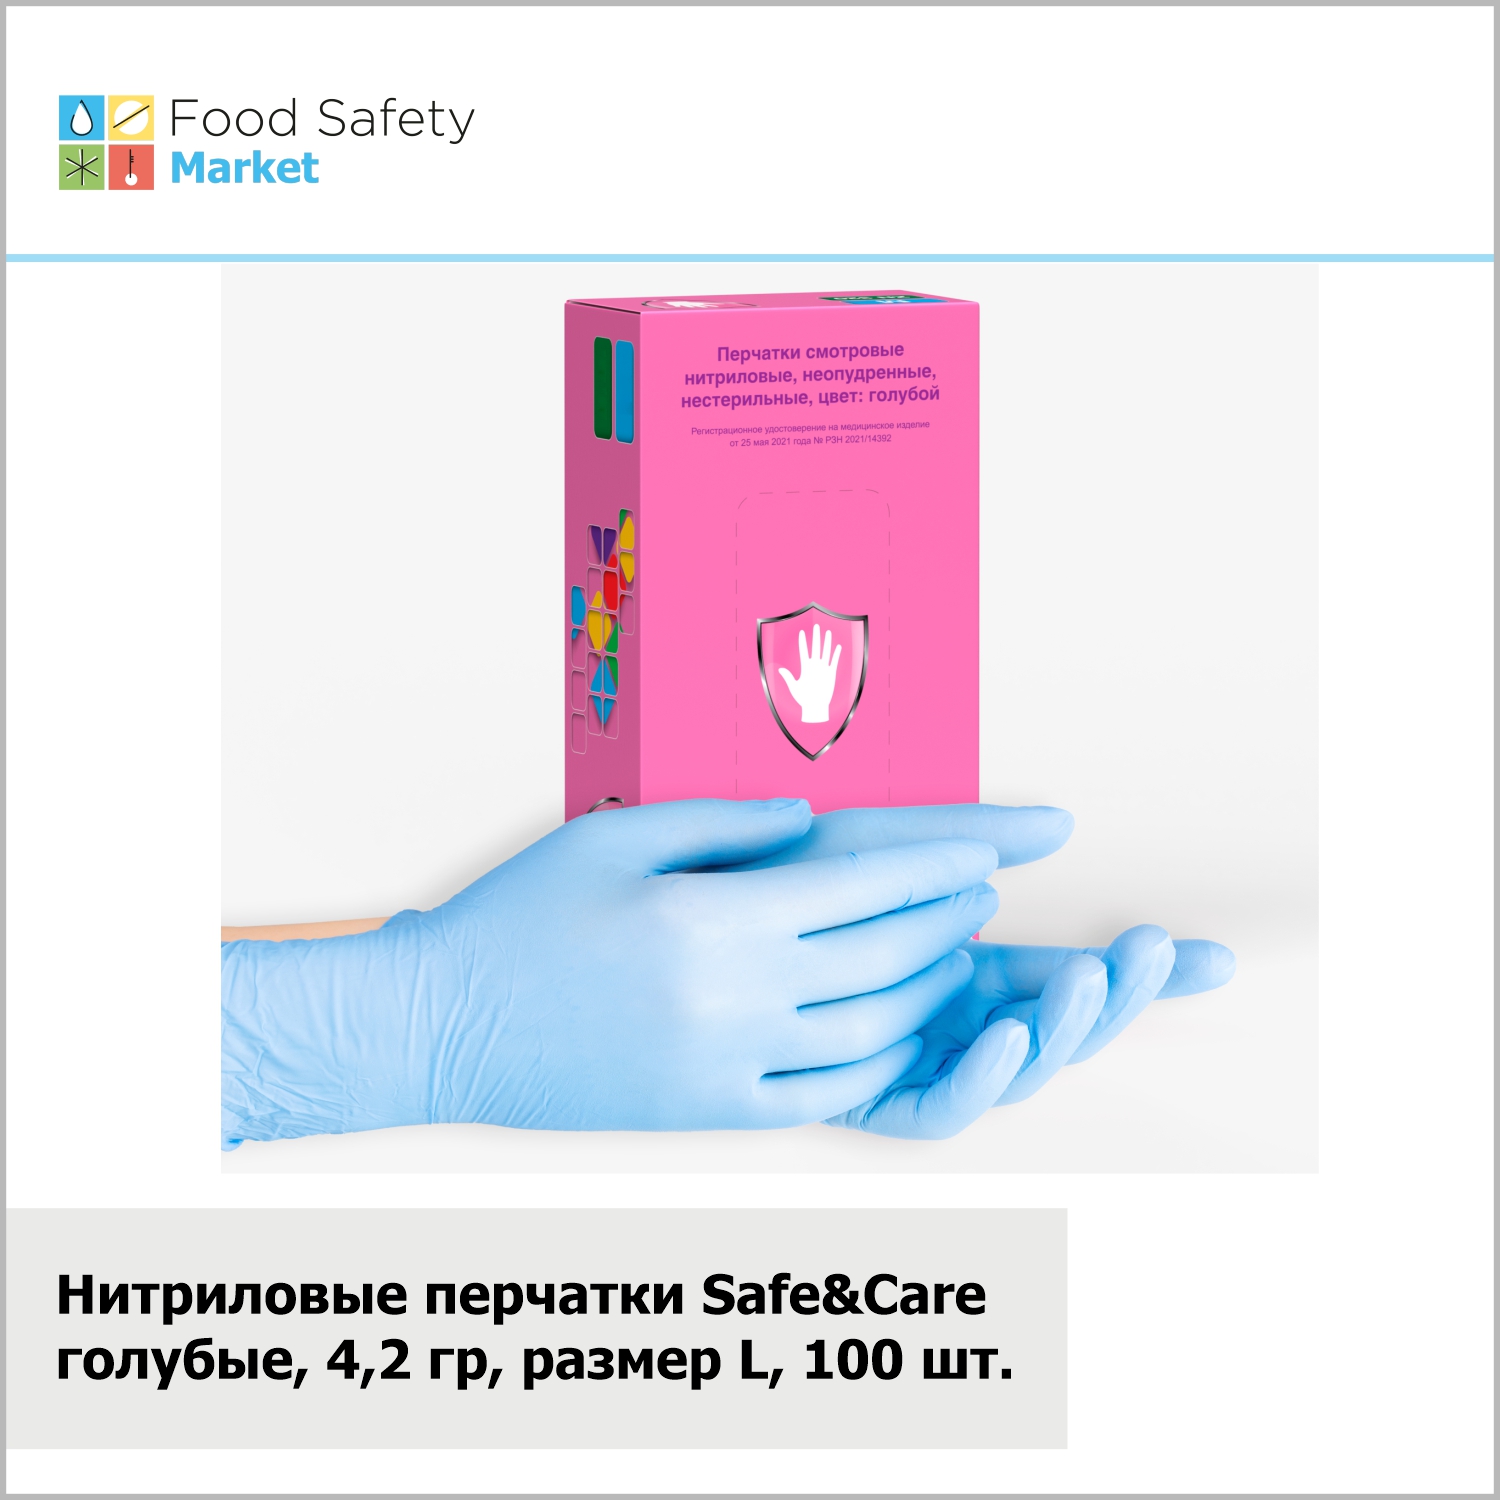 Нитриловые перчатки "Safe&Care" голубые, 4,2 гр, размер L, 100 шт. в упак.